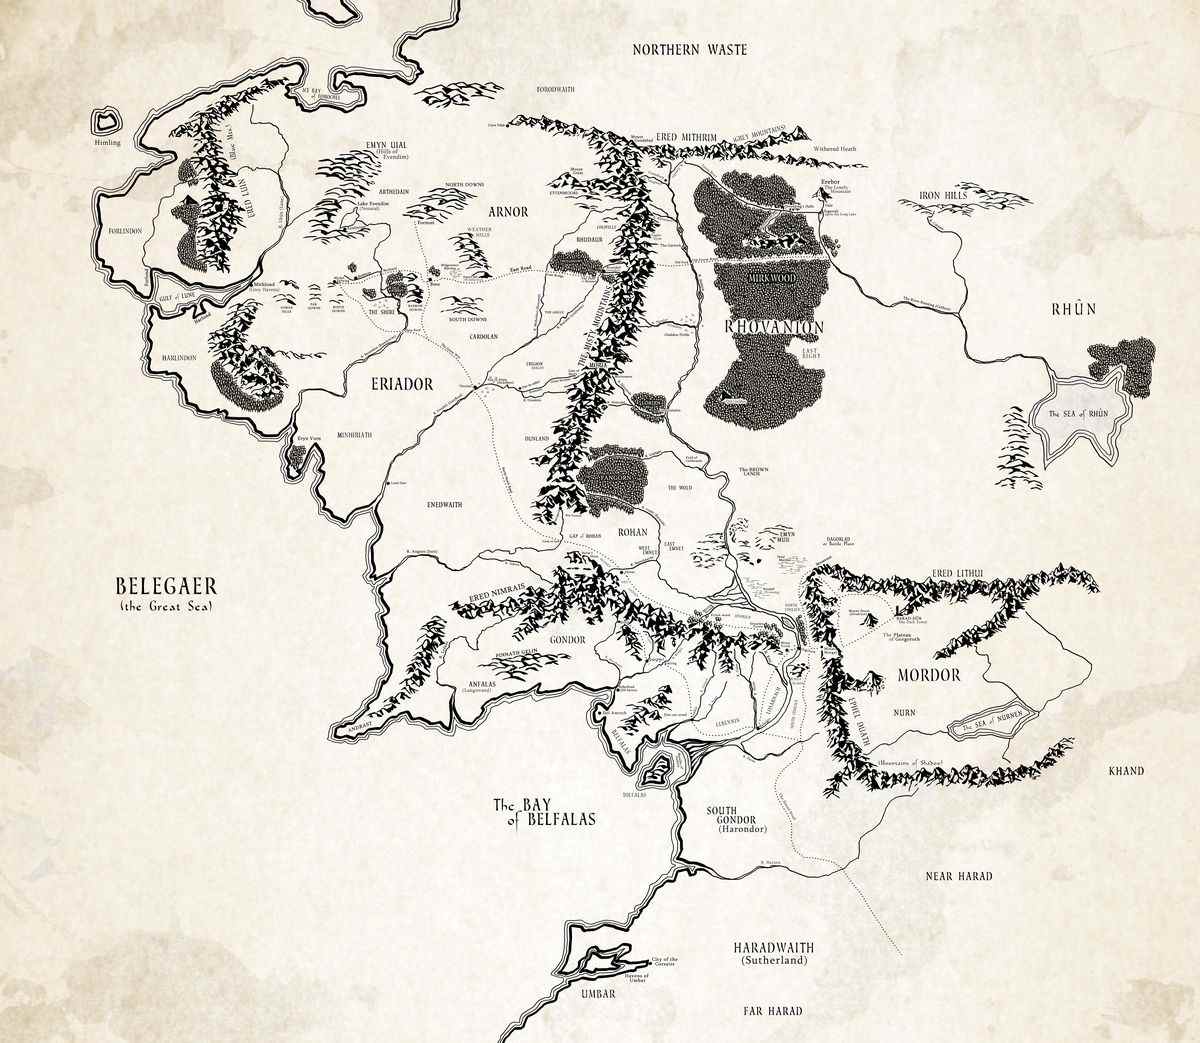 Une carte géante de la Terre du Milieu reflétant des lieux de la trilogie cinématographique tels que The Shire, Mines of Moria et Mordor